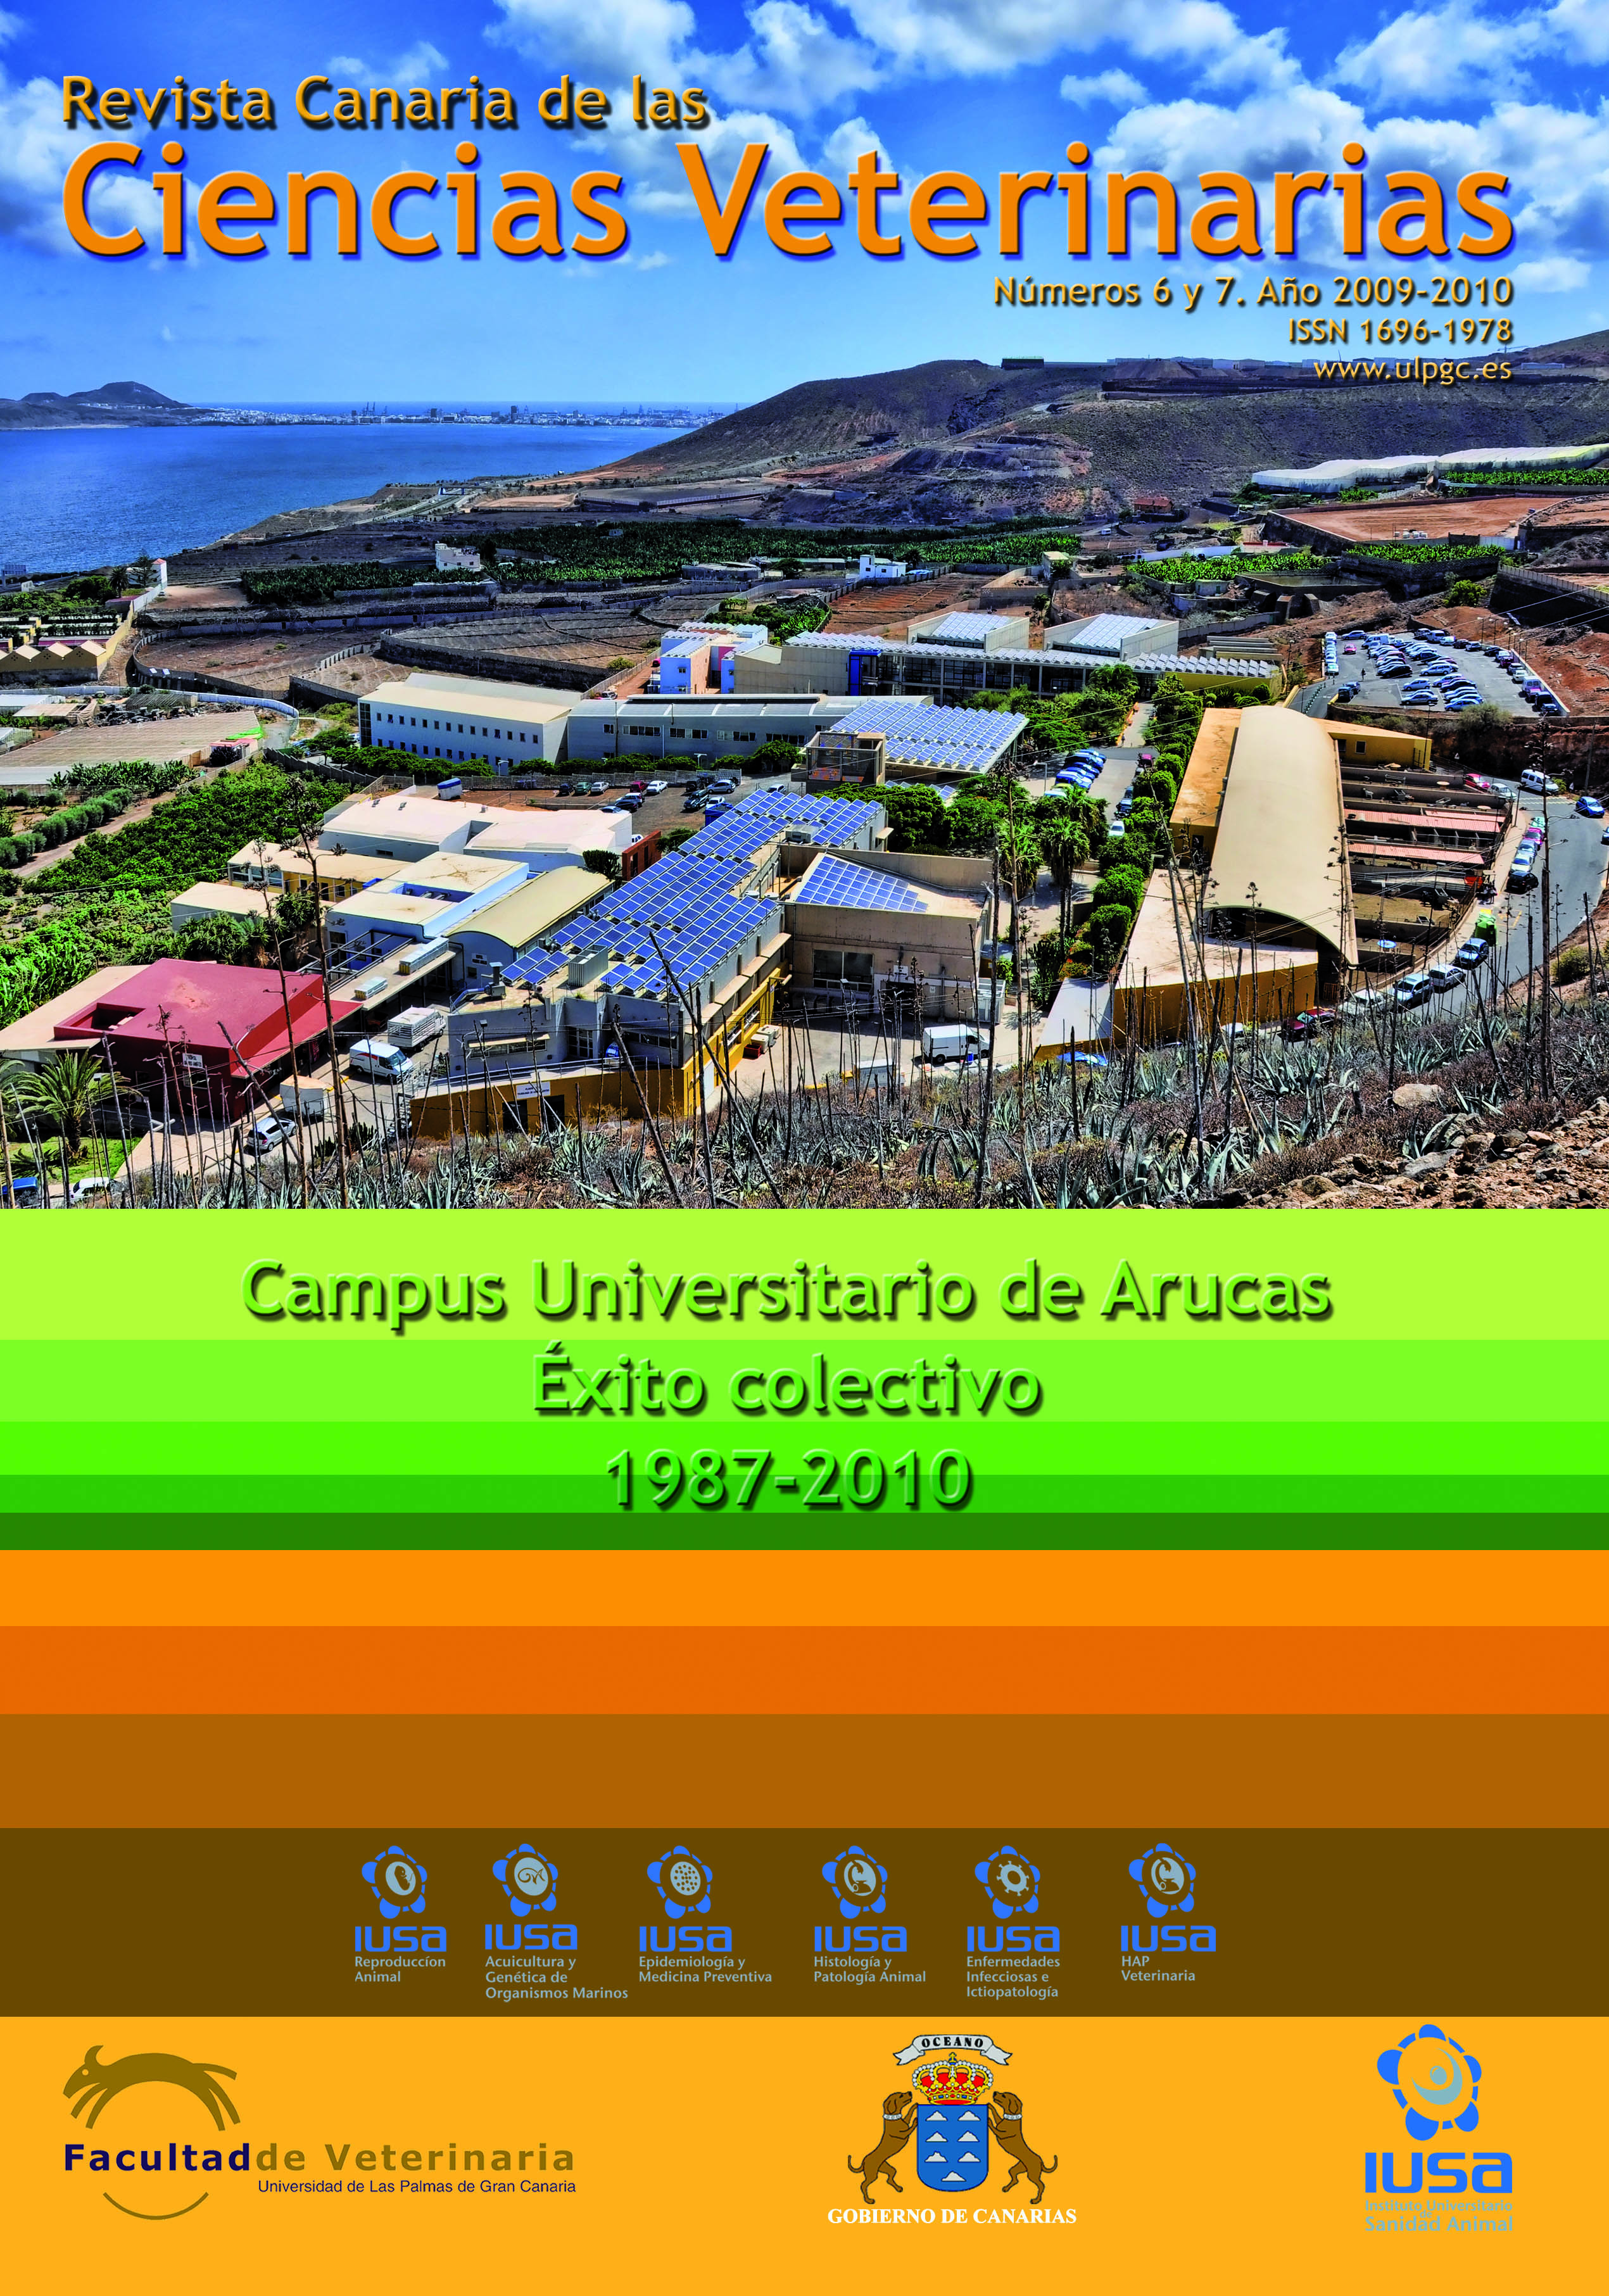 La Universidad de Las Palmas publica el número 6/7 de la "Revista Canaria de las Ciencias Veterinarias"